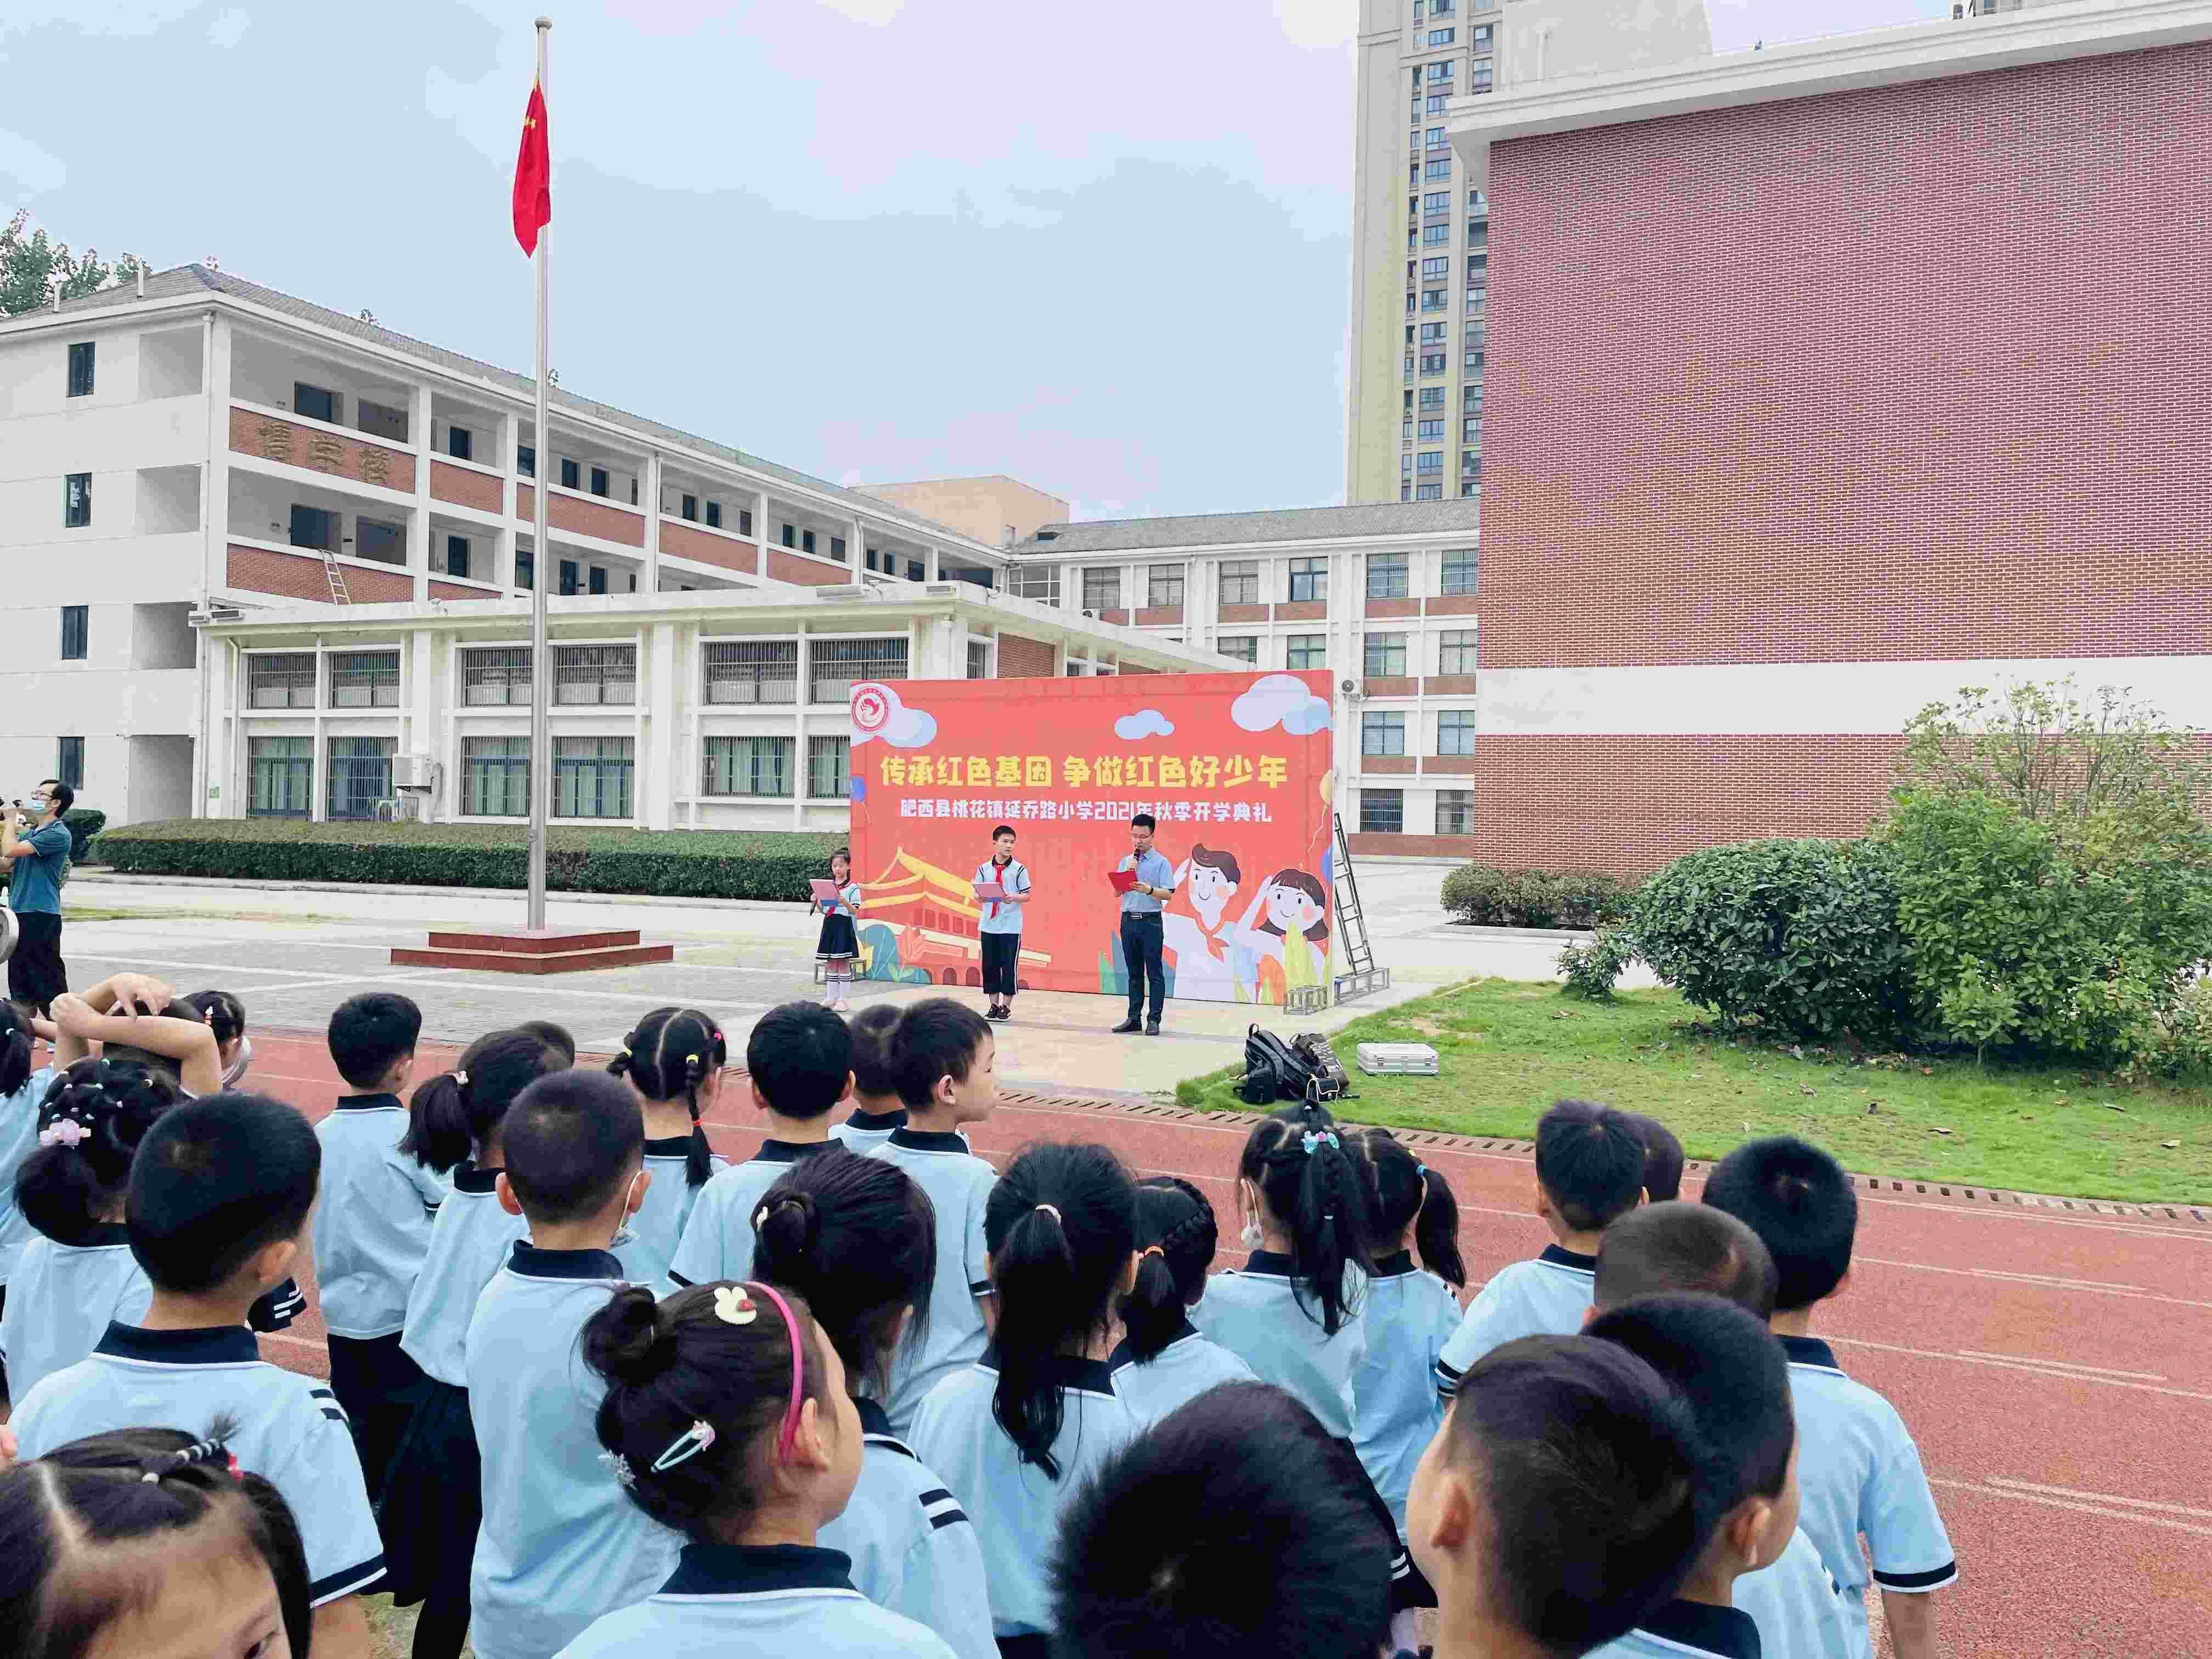 延乔路小学“传承红色基因 争做红色好少年”开学典礼。肥西县委宣传部供图